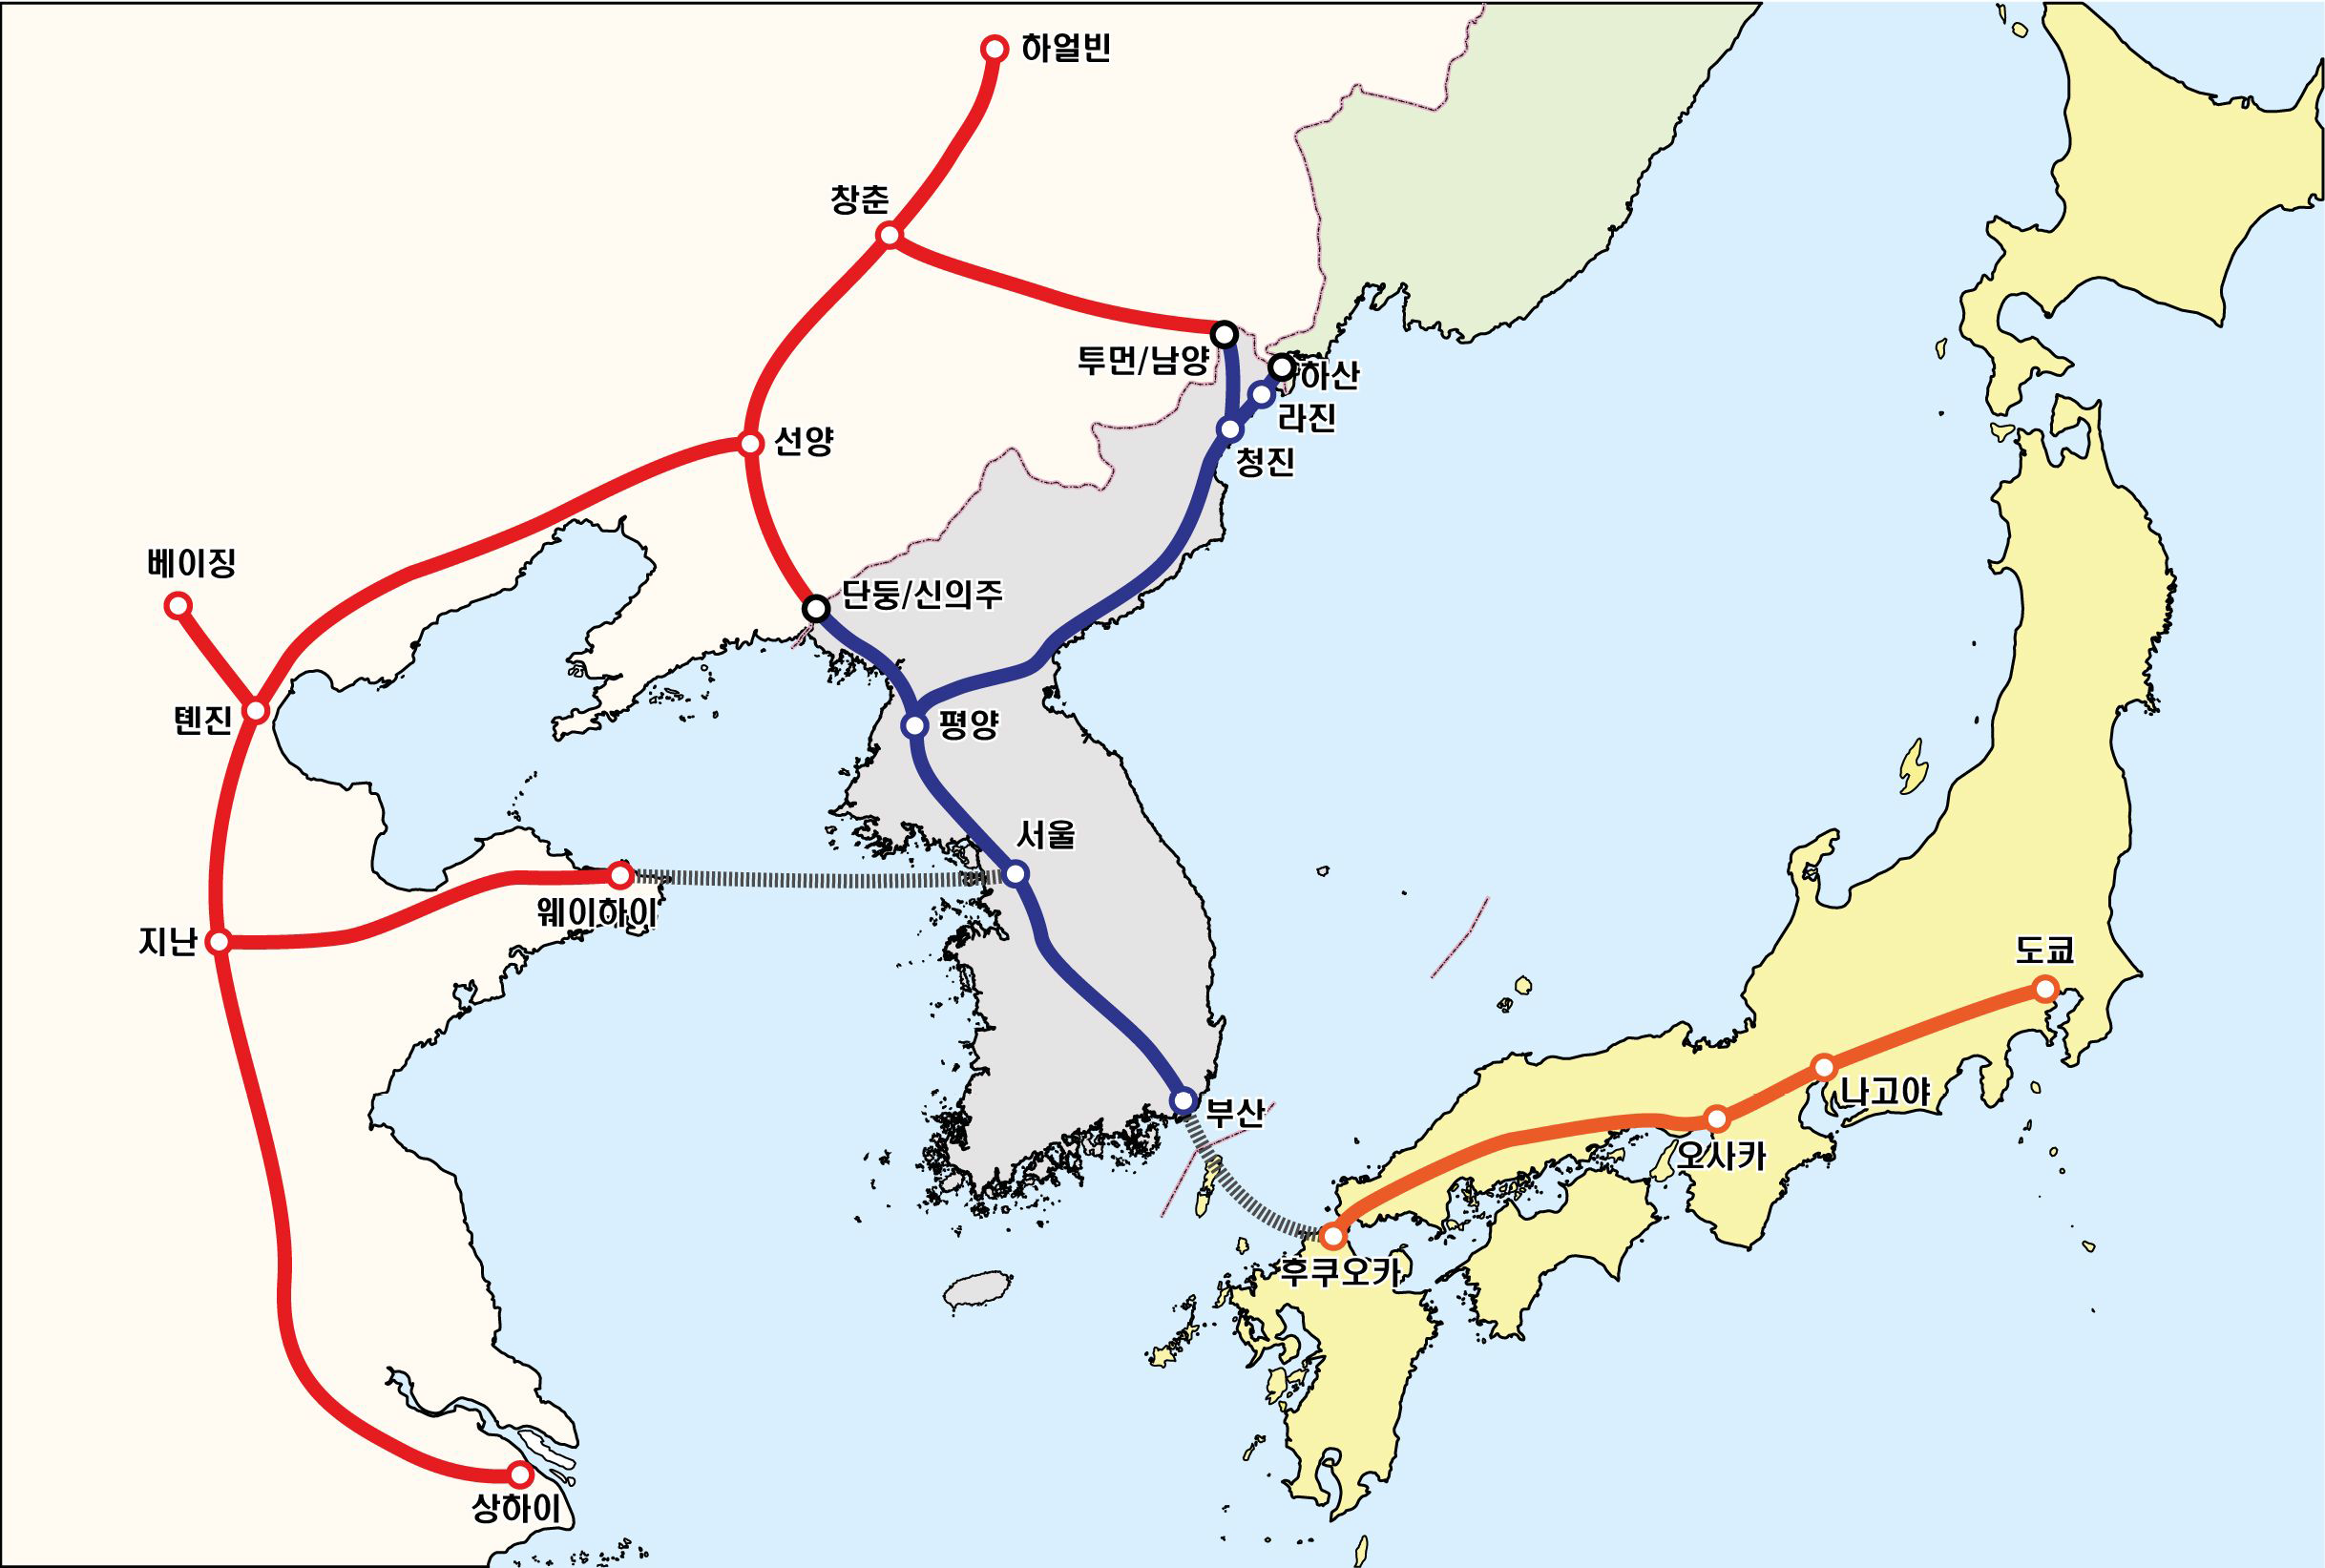 동북아 고속철도망 개념도